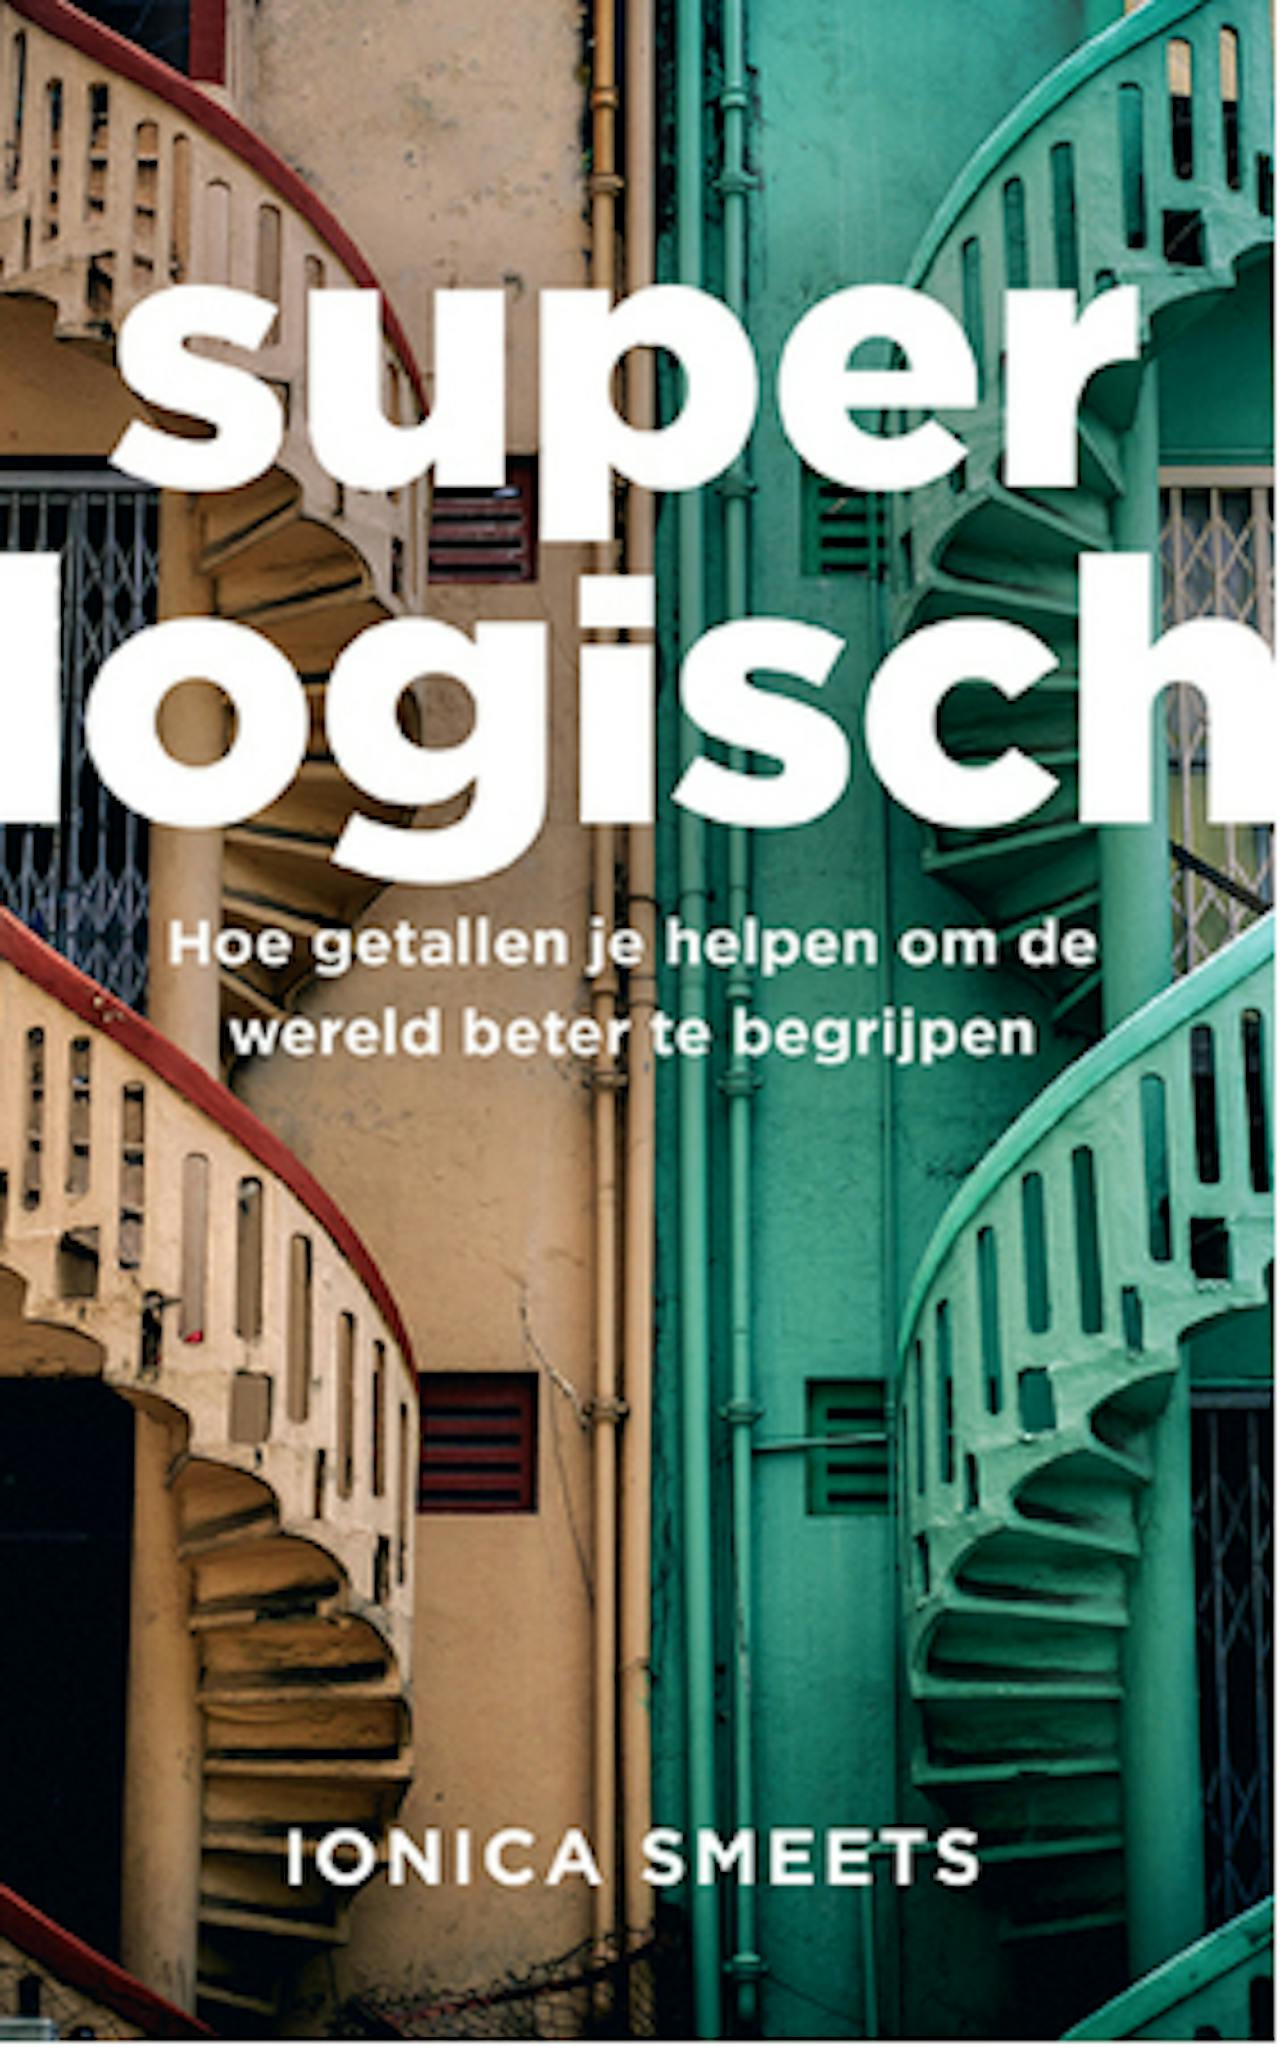 Cover van een boek van Ionica Smeets. Titel: Super logisch. Hoe getallen je helpen om de wereld beter te begrijpen.